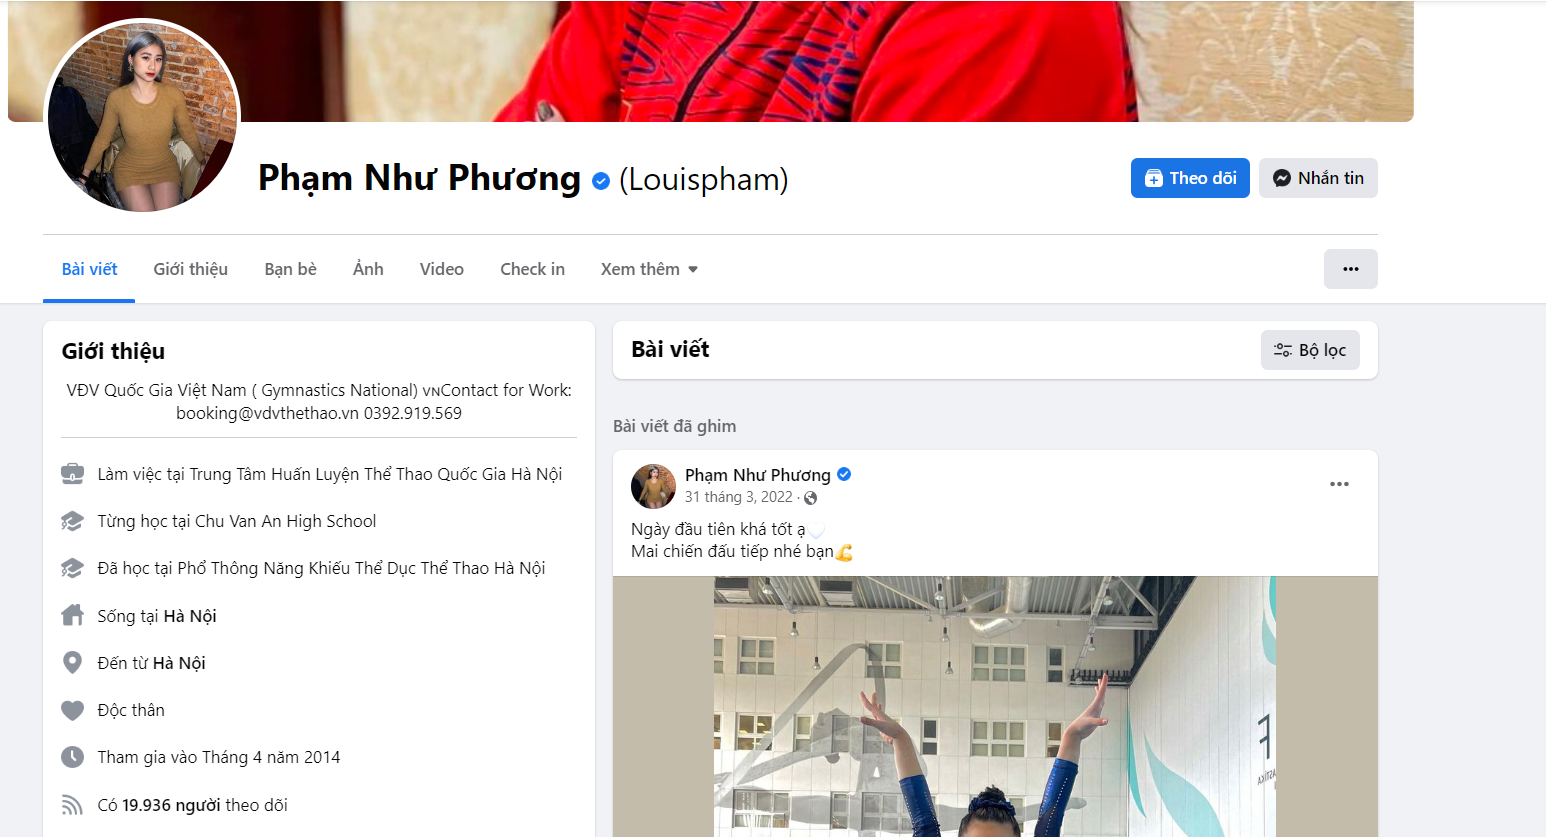 pham-nhu-phuong-1678530315.PNG